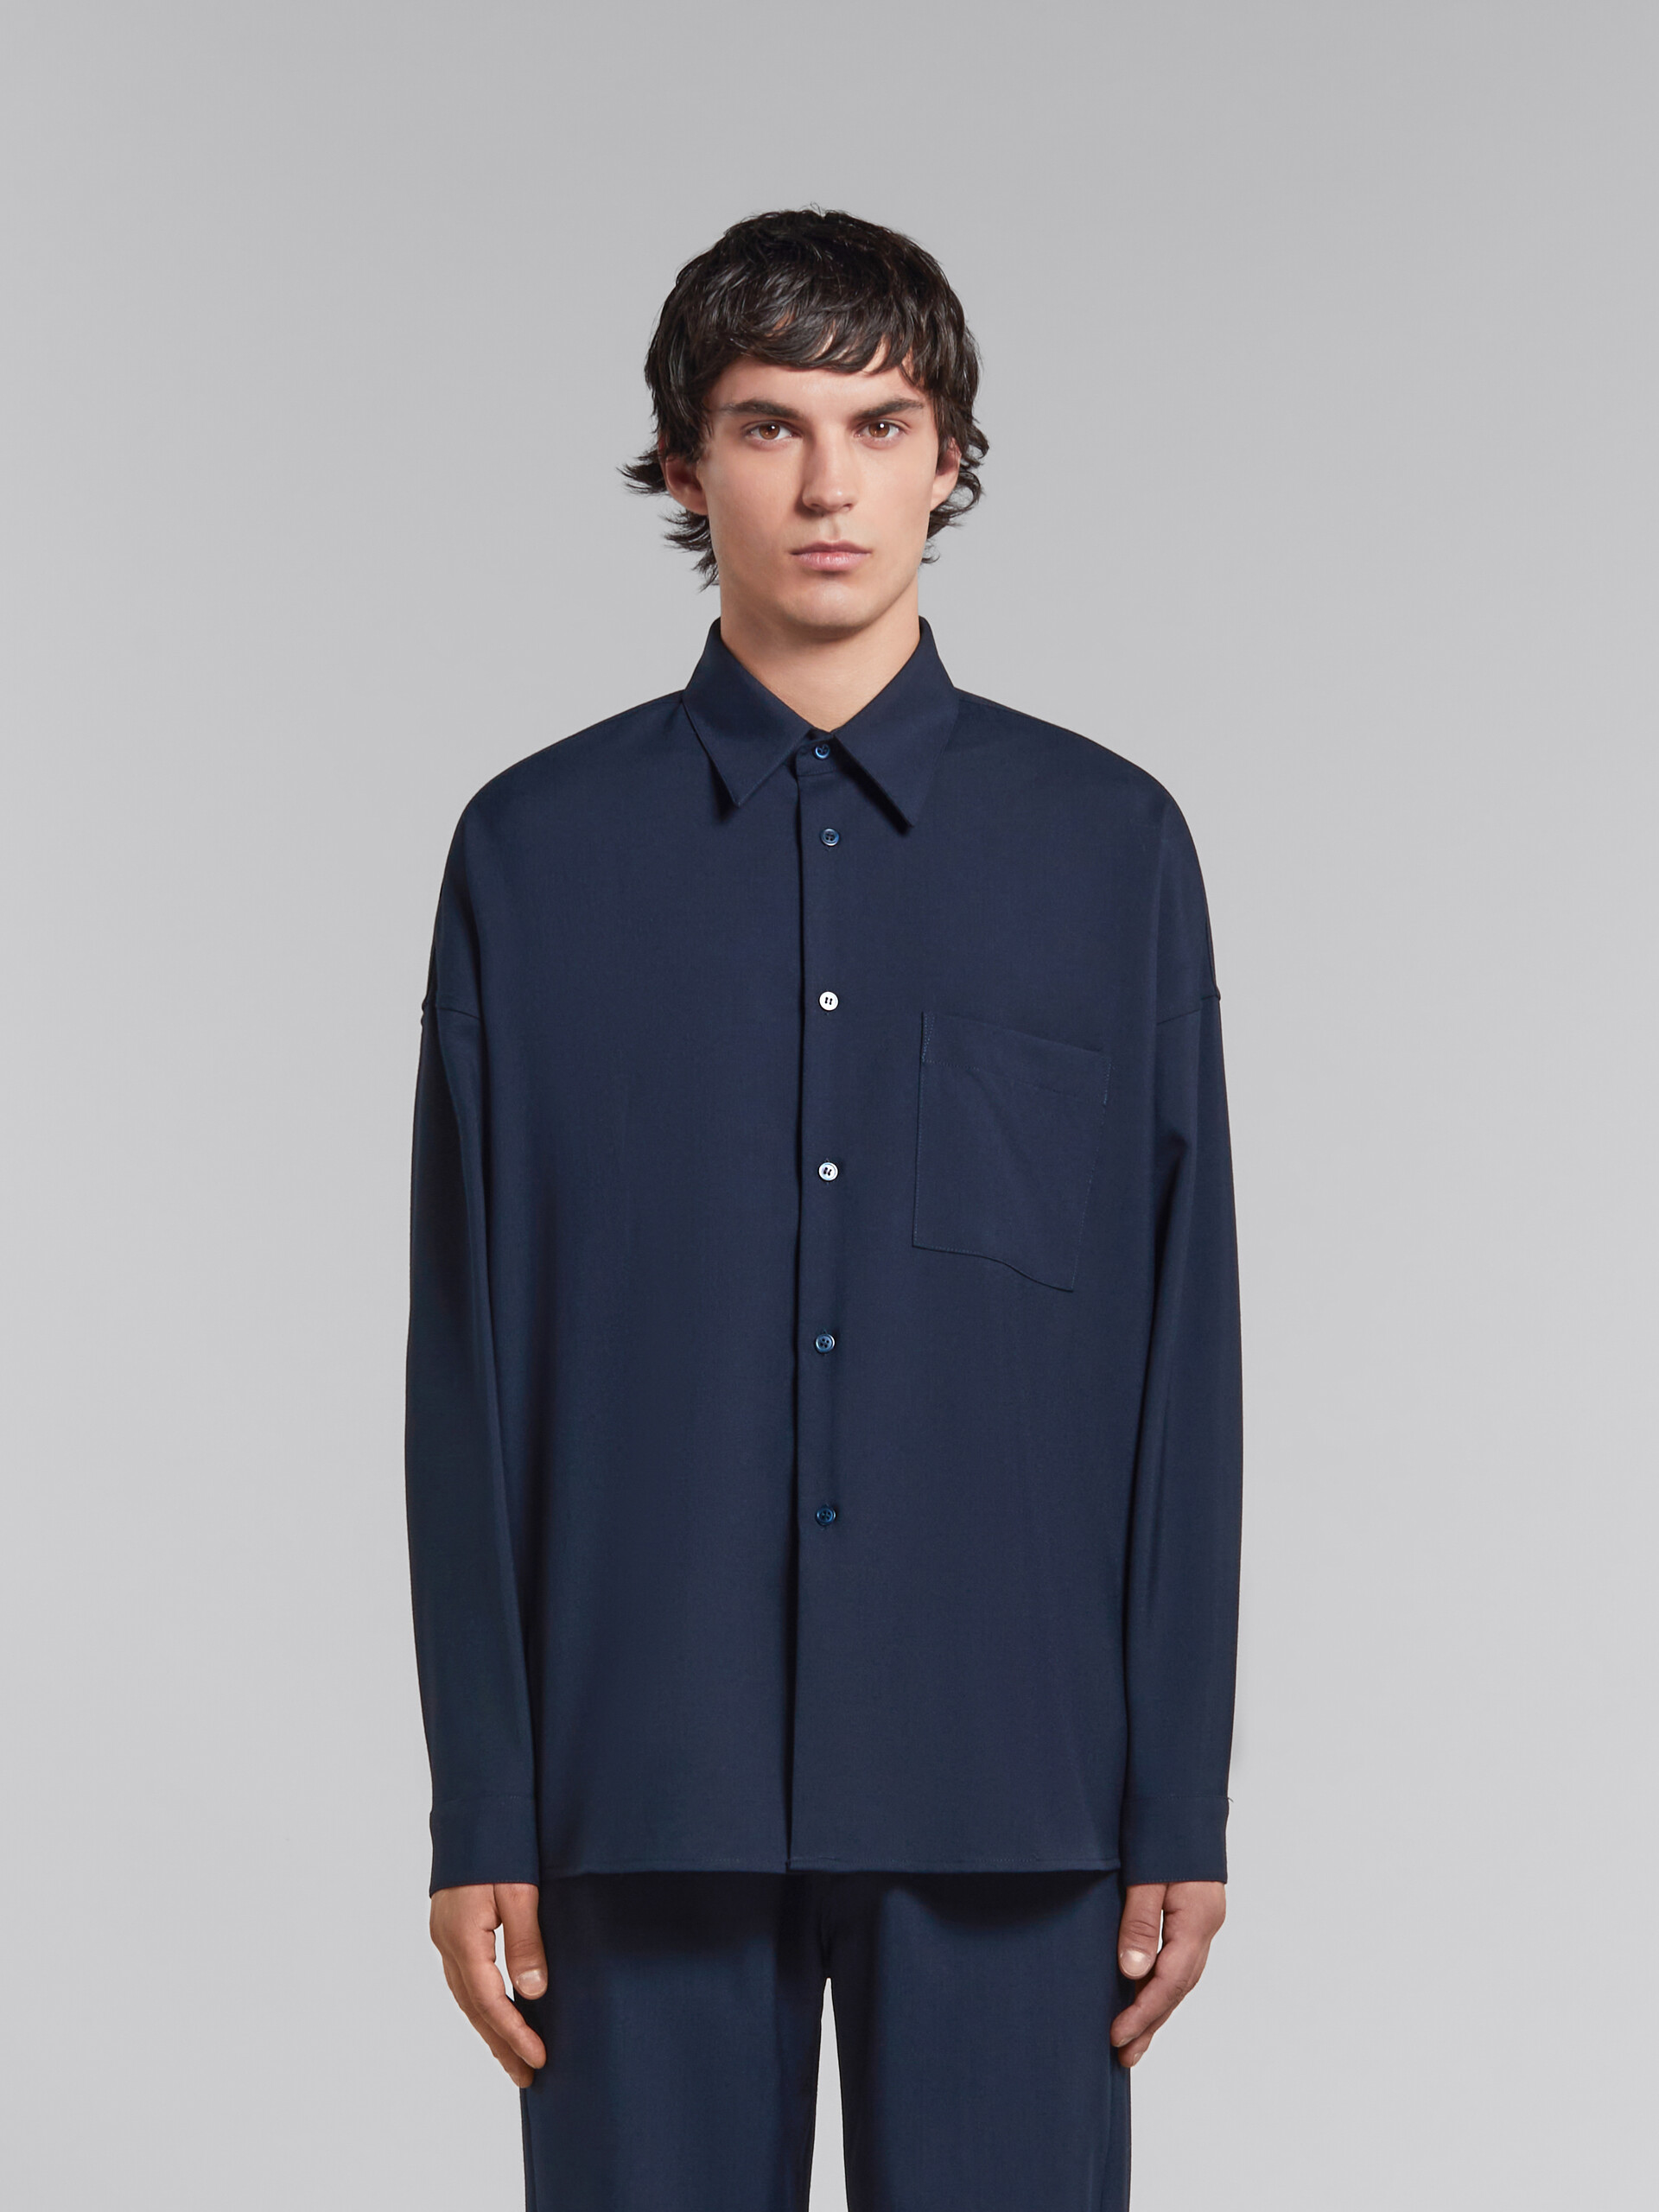 Camisa de lana tropical azul intenso con manga larga - Camisas - Image 2